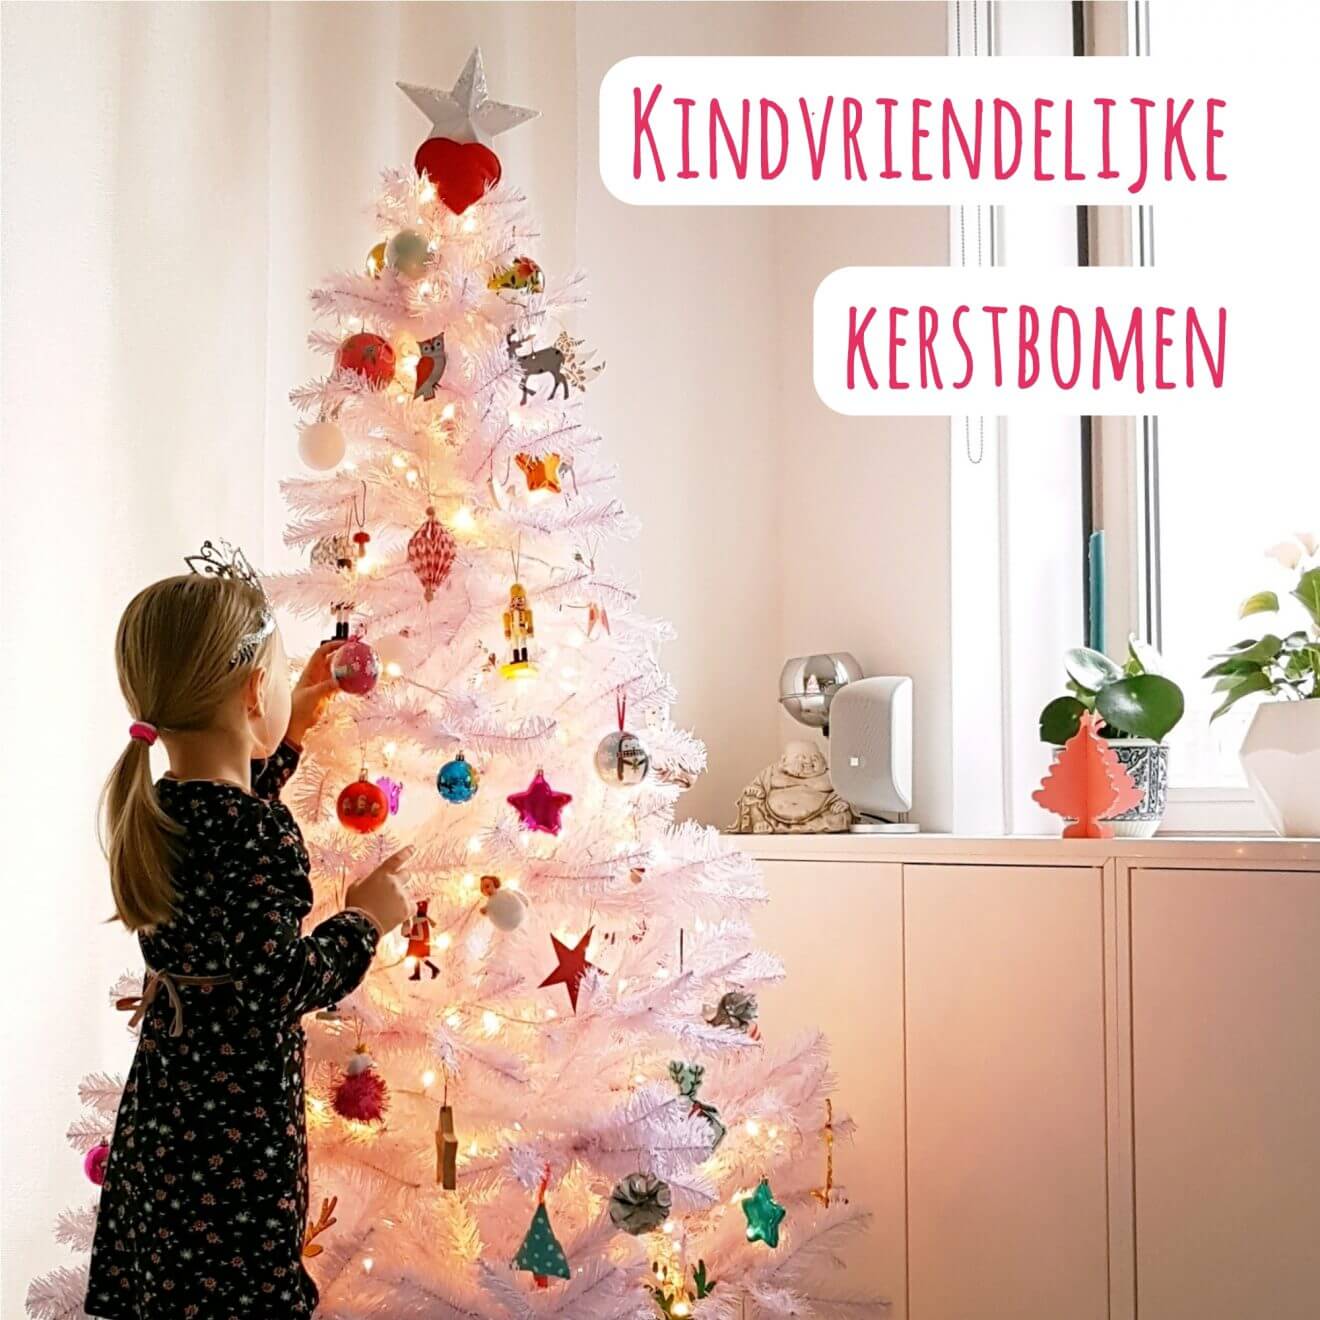 Kindvriendelijke kerstboom voor baby, peuter en kleuter